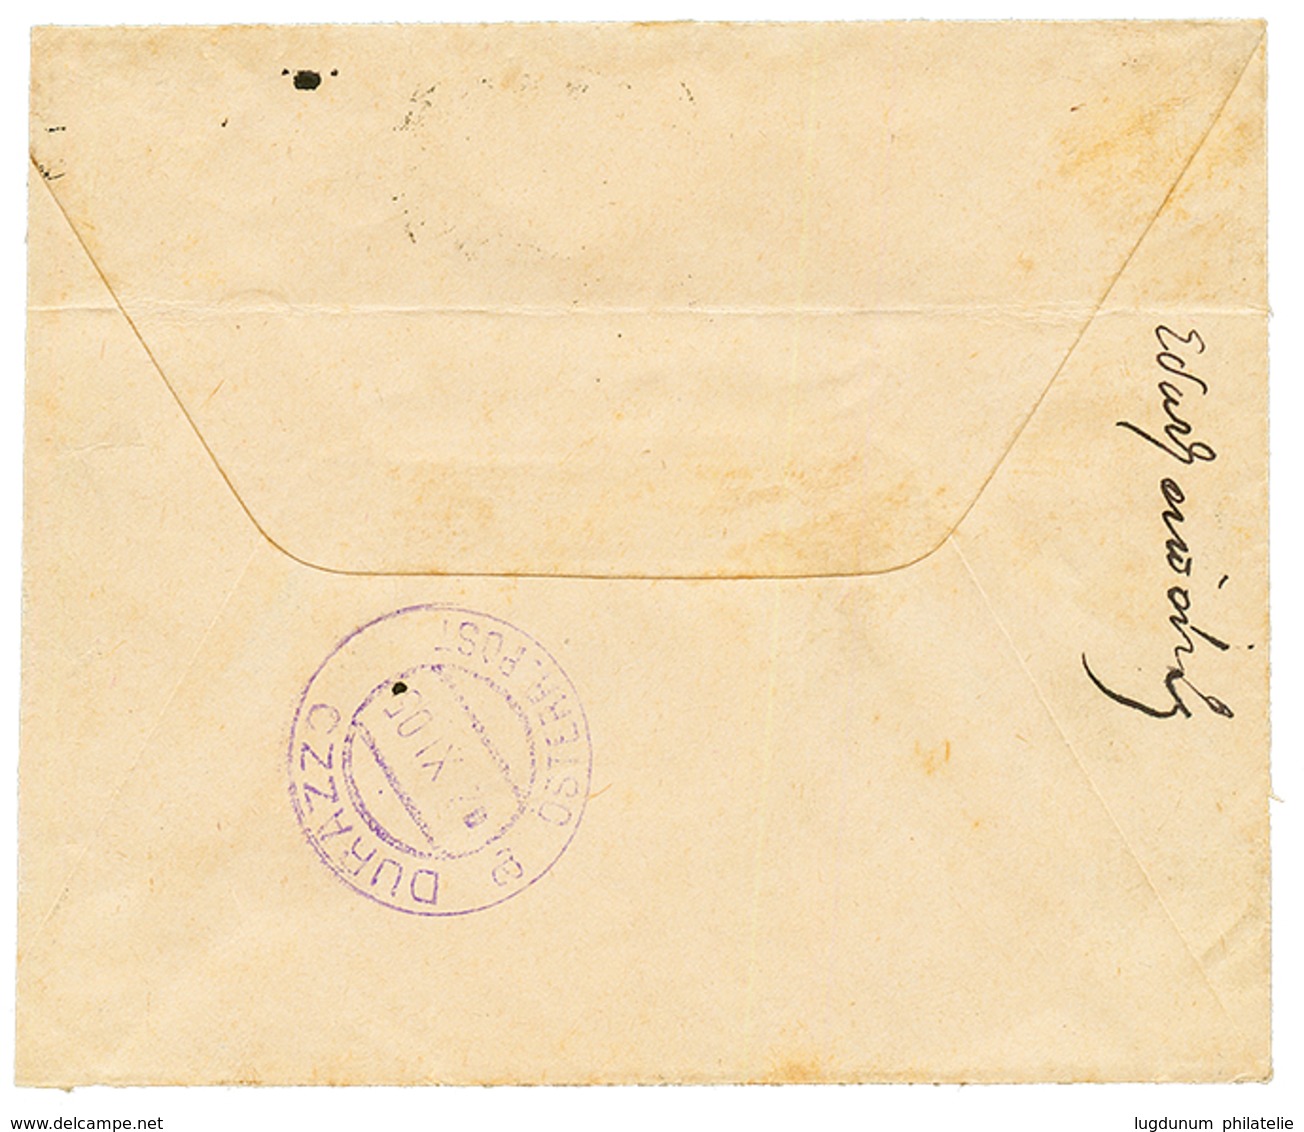 "CANEA To DURAZZO " : 1905 25c Canc. CANEA On Envelope To DURAZZO ALBANIA (superb Arrival DURAZZO In Violet). Vf. - Eastern Austria